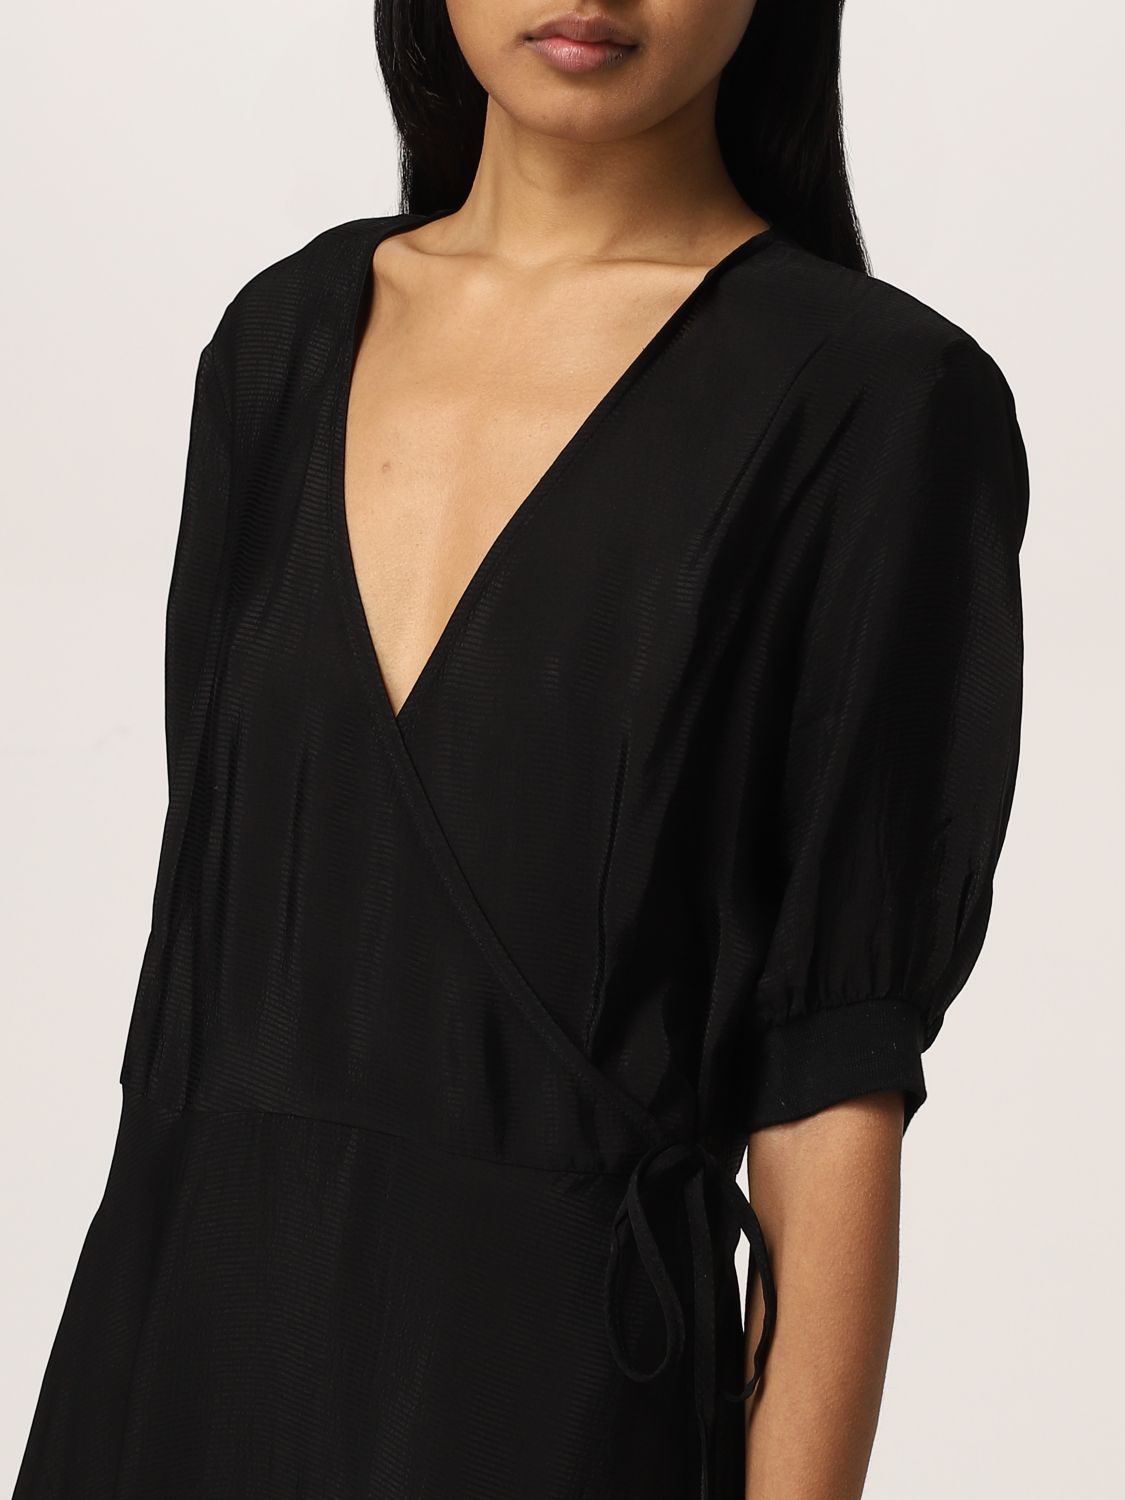 ARMANI EXCHANGE: dress for woman - Black | Armani Exchange dress ...